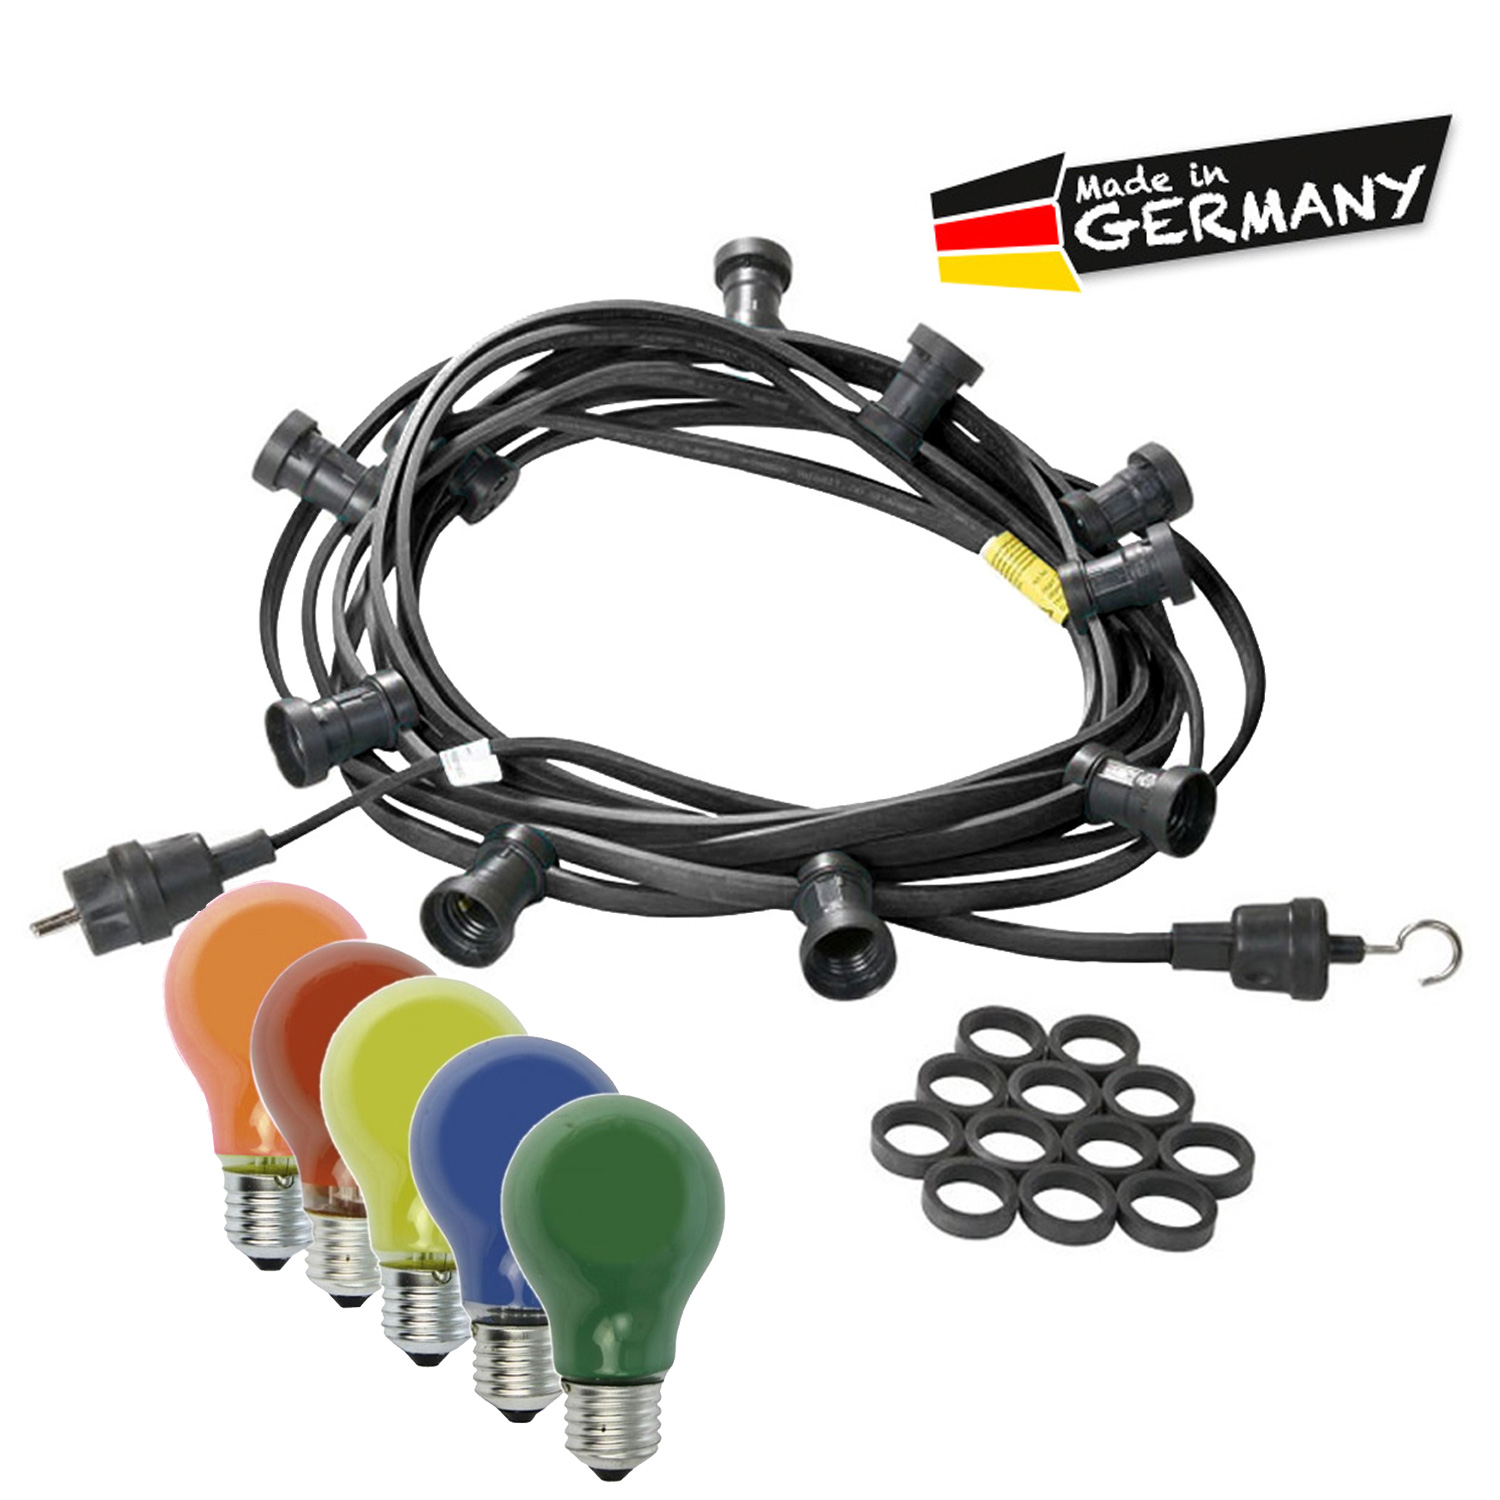 Illu-/Partylichterkette 20m - Außenlichterkette schwarz - Made in Germany - 20 bunte 25W Glühlampen